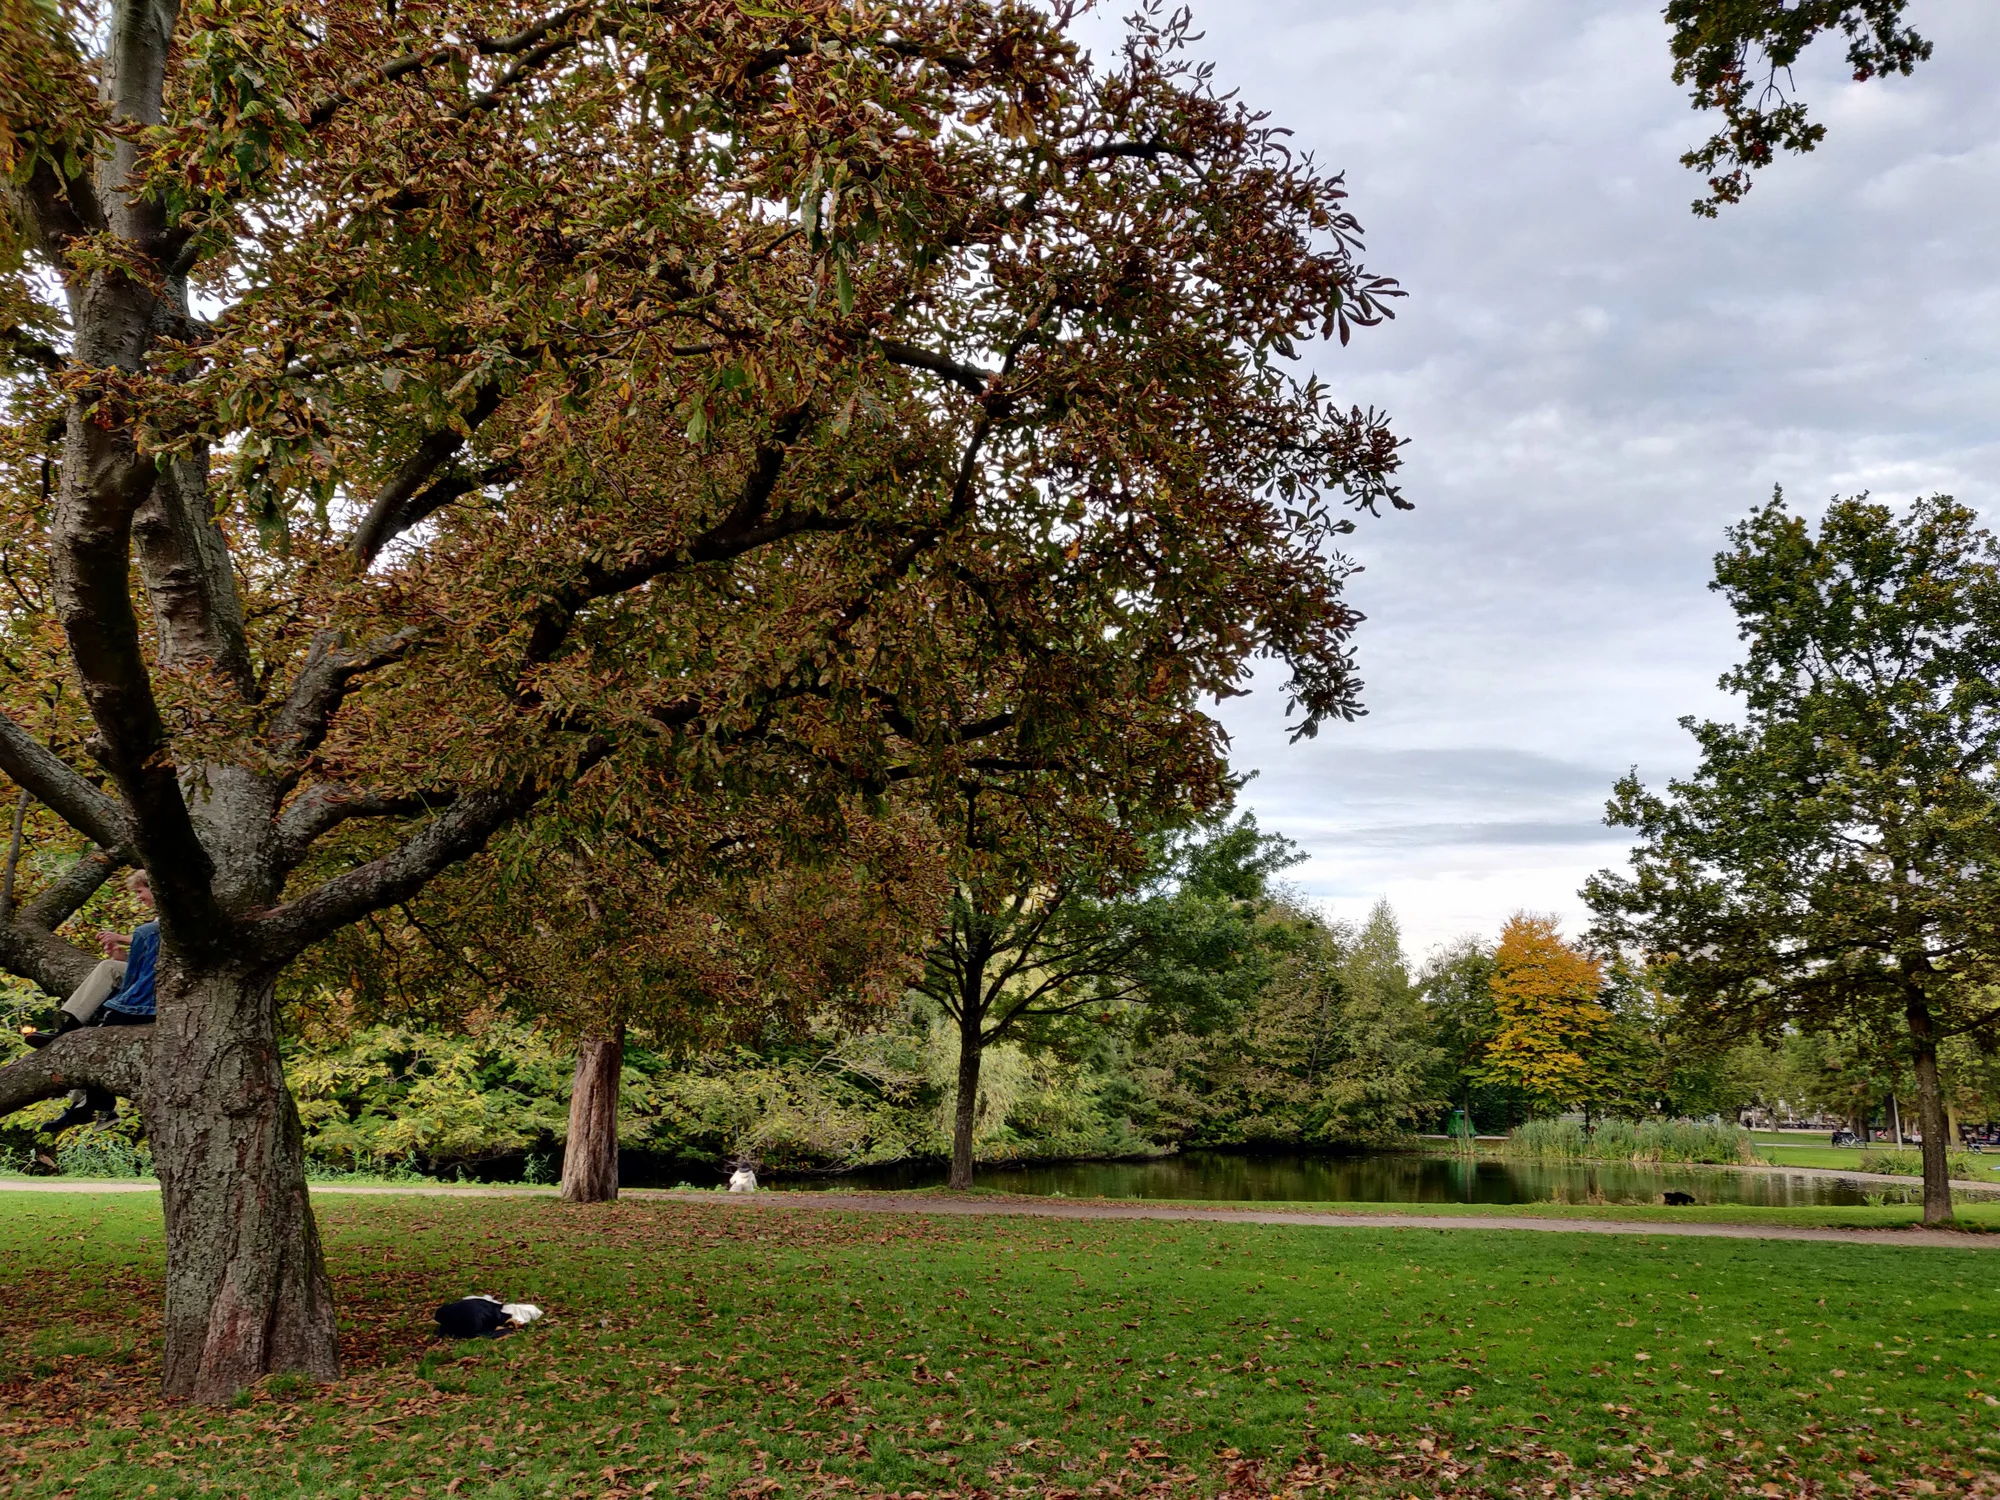 פונדל פארק בסתיו. צילום: רחלי לביא דגן